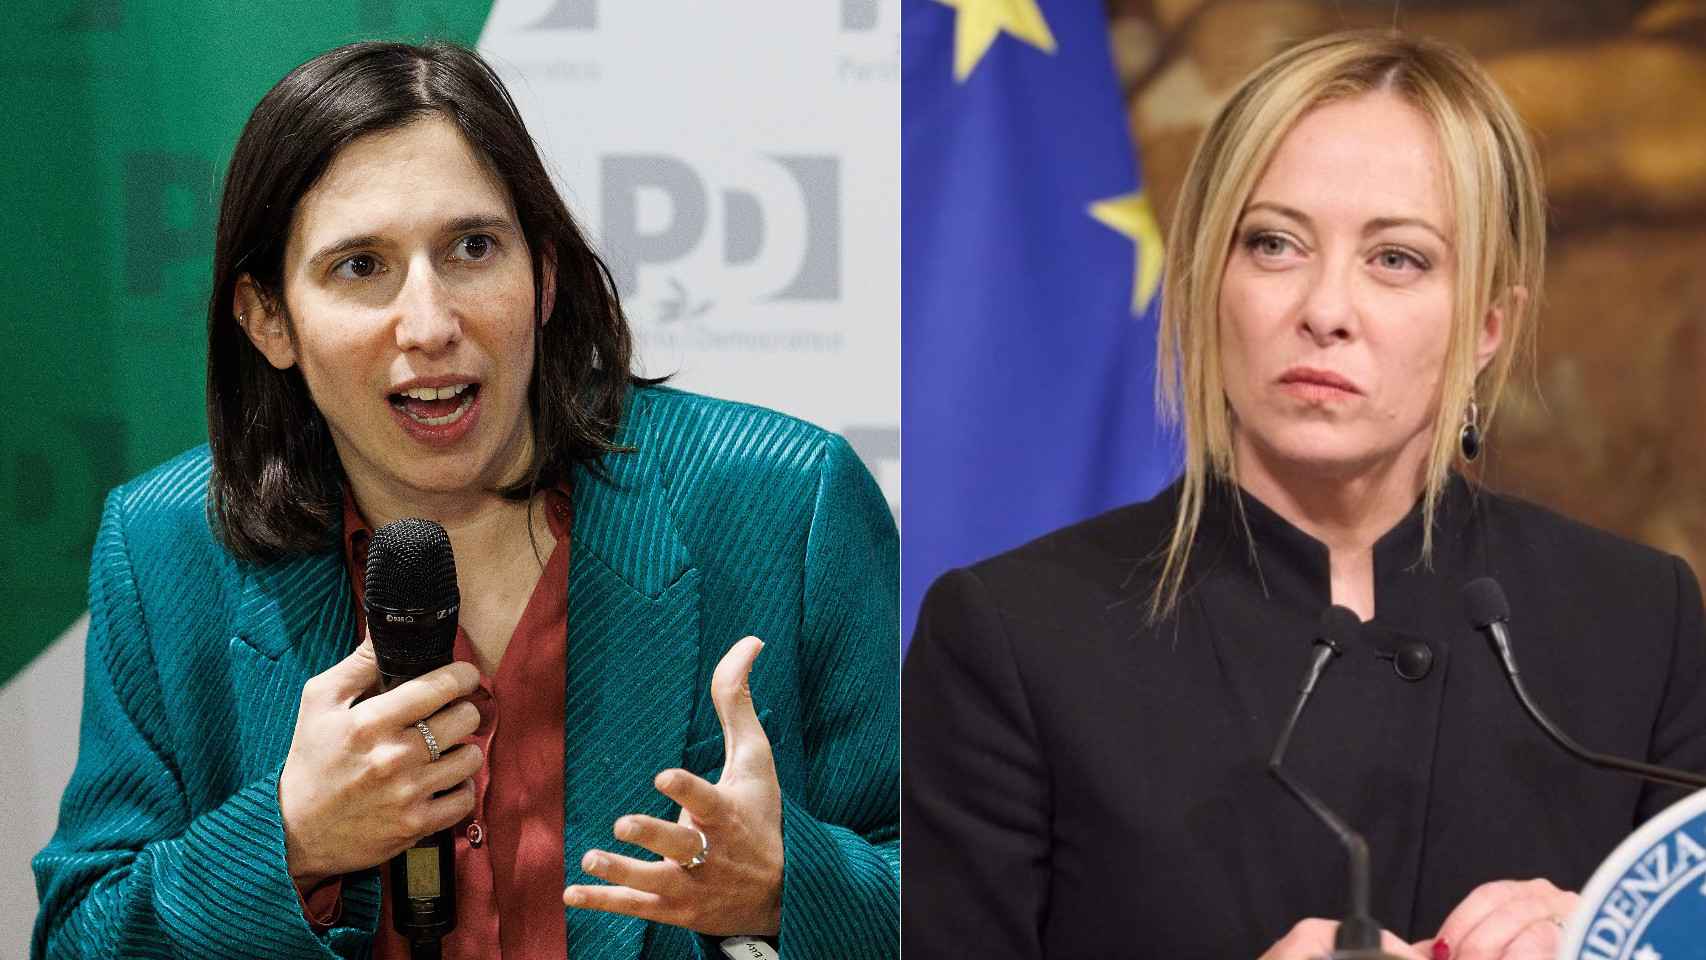 L’Italia ospita il primo dibattito politico televisivo tra due donne